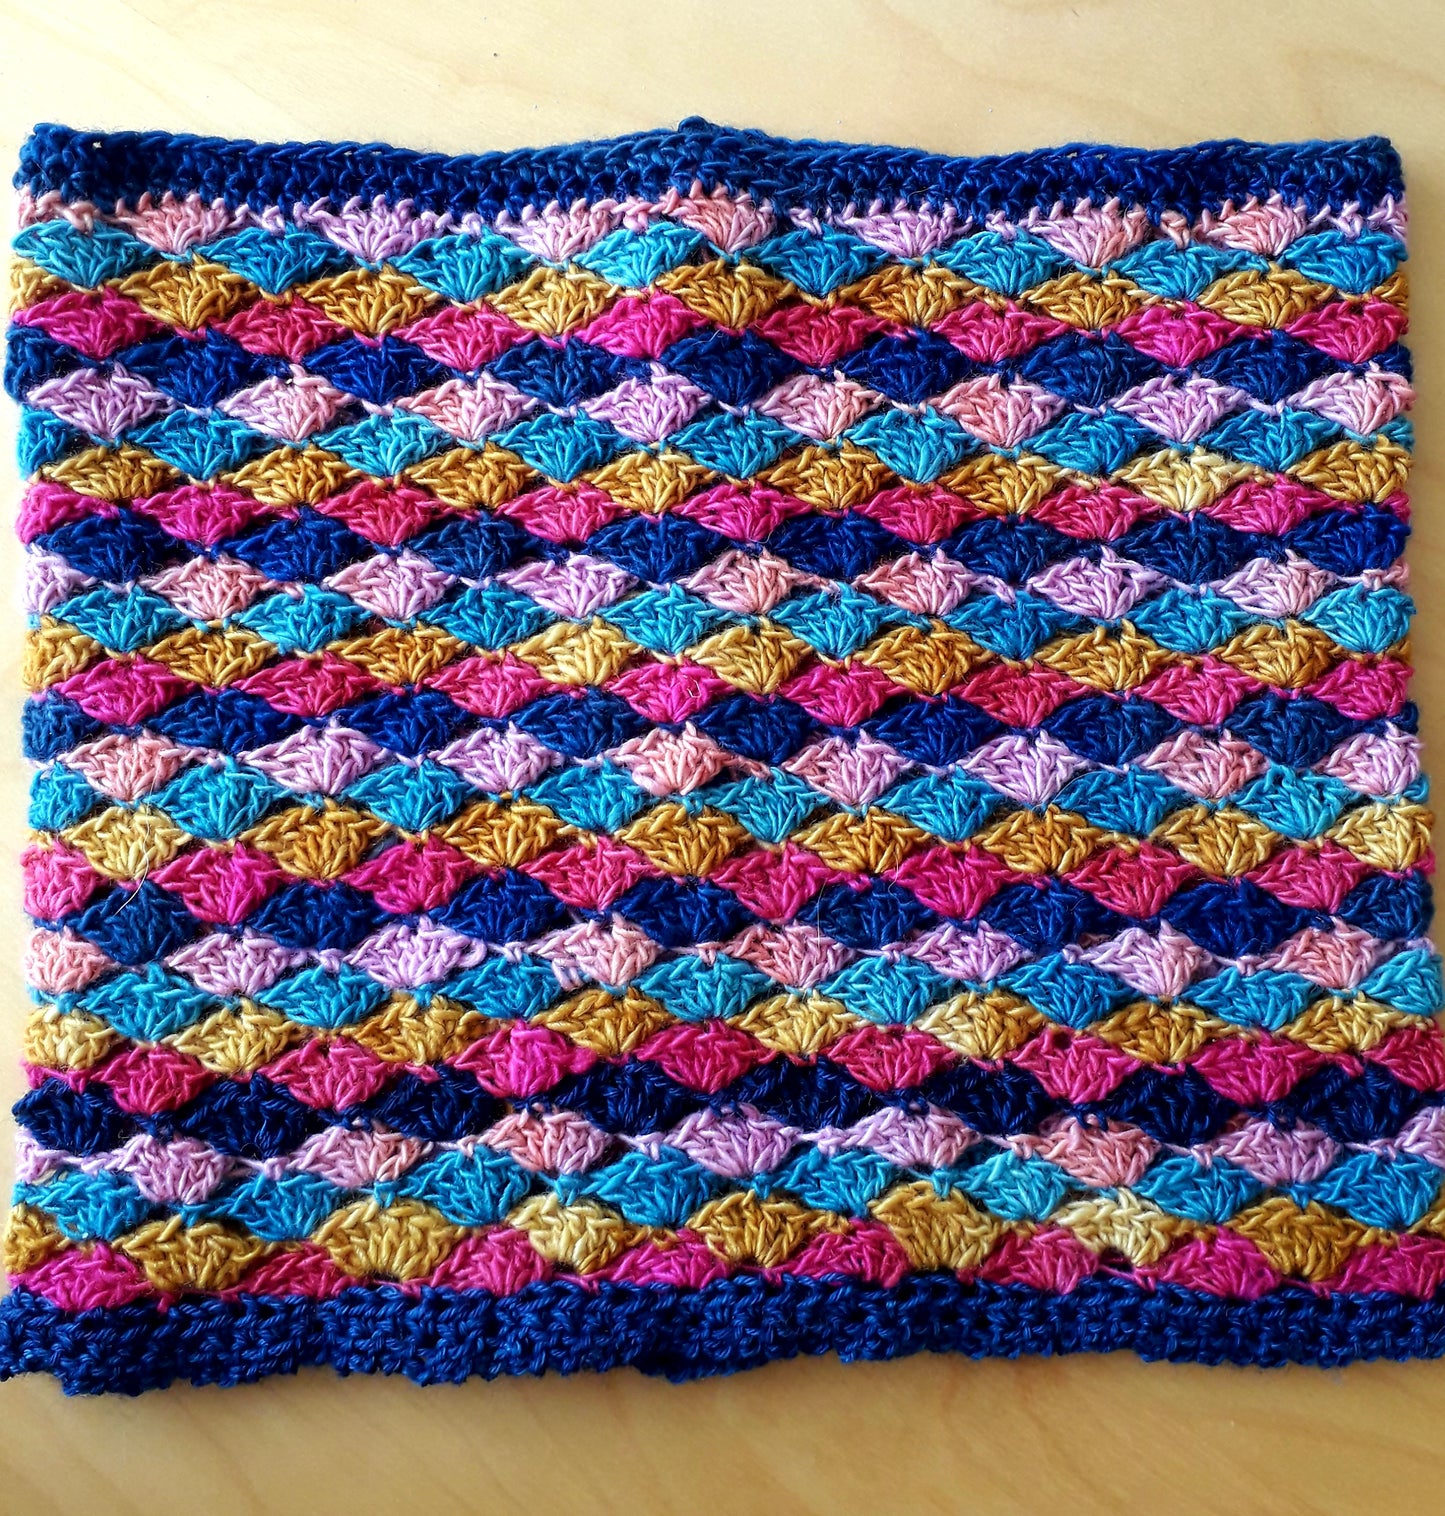 Shell Stitch Cowl Crochet Pattern using lacy shell stitch 